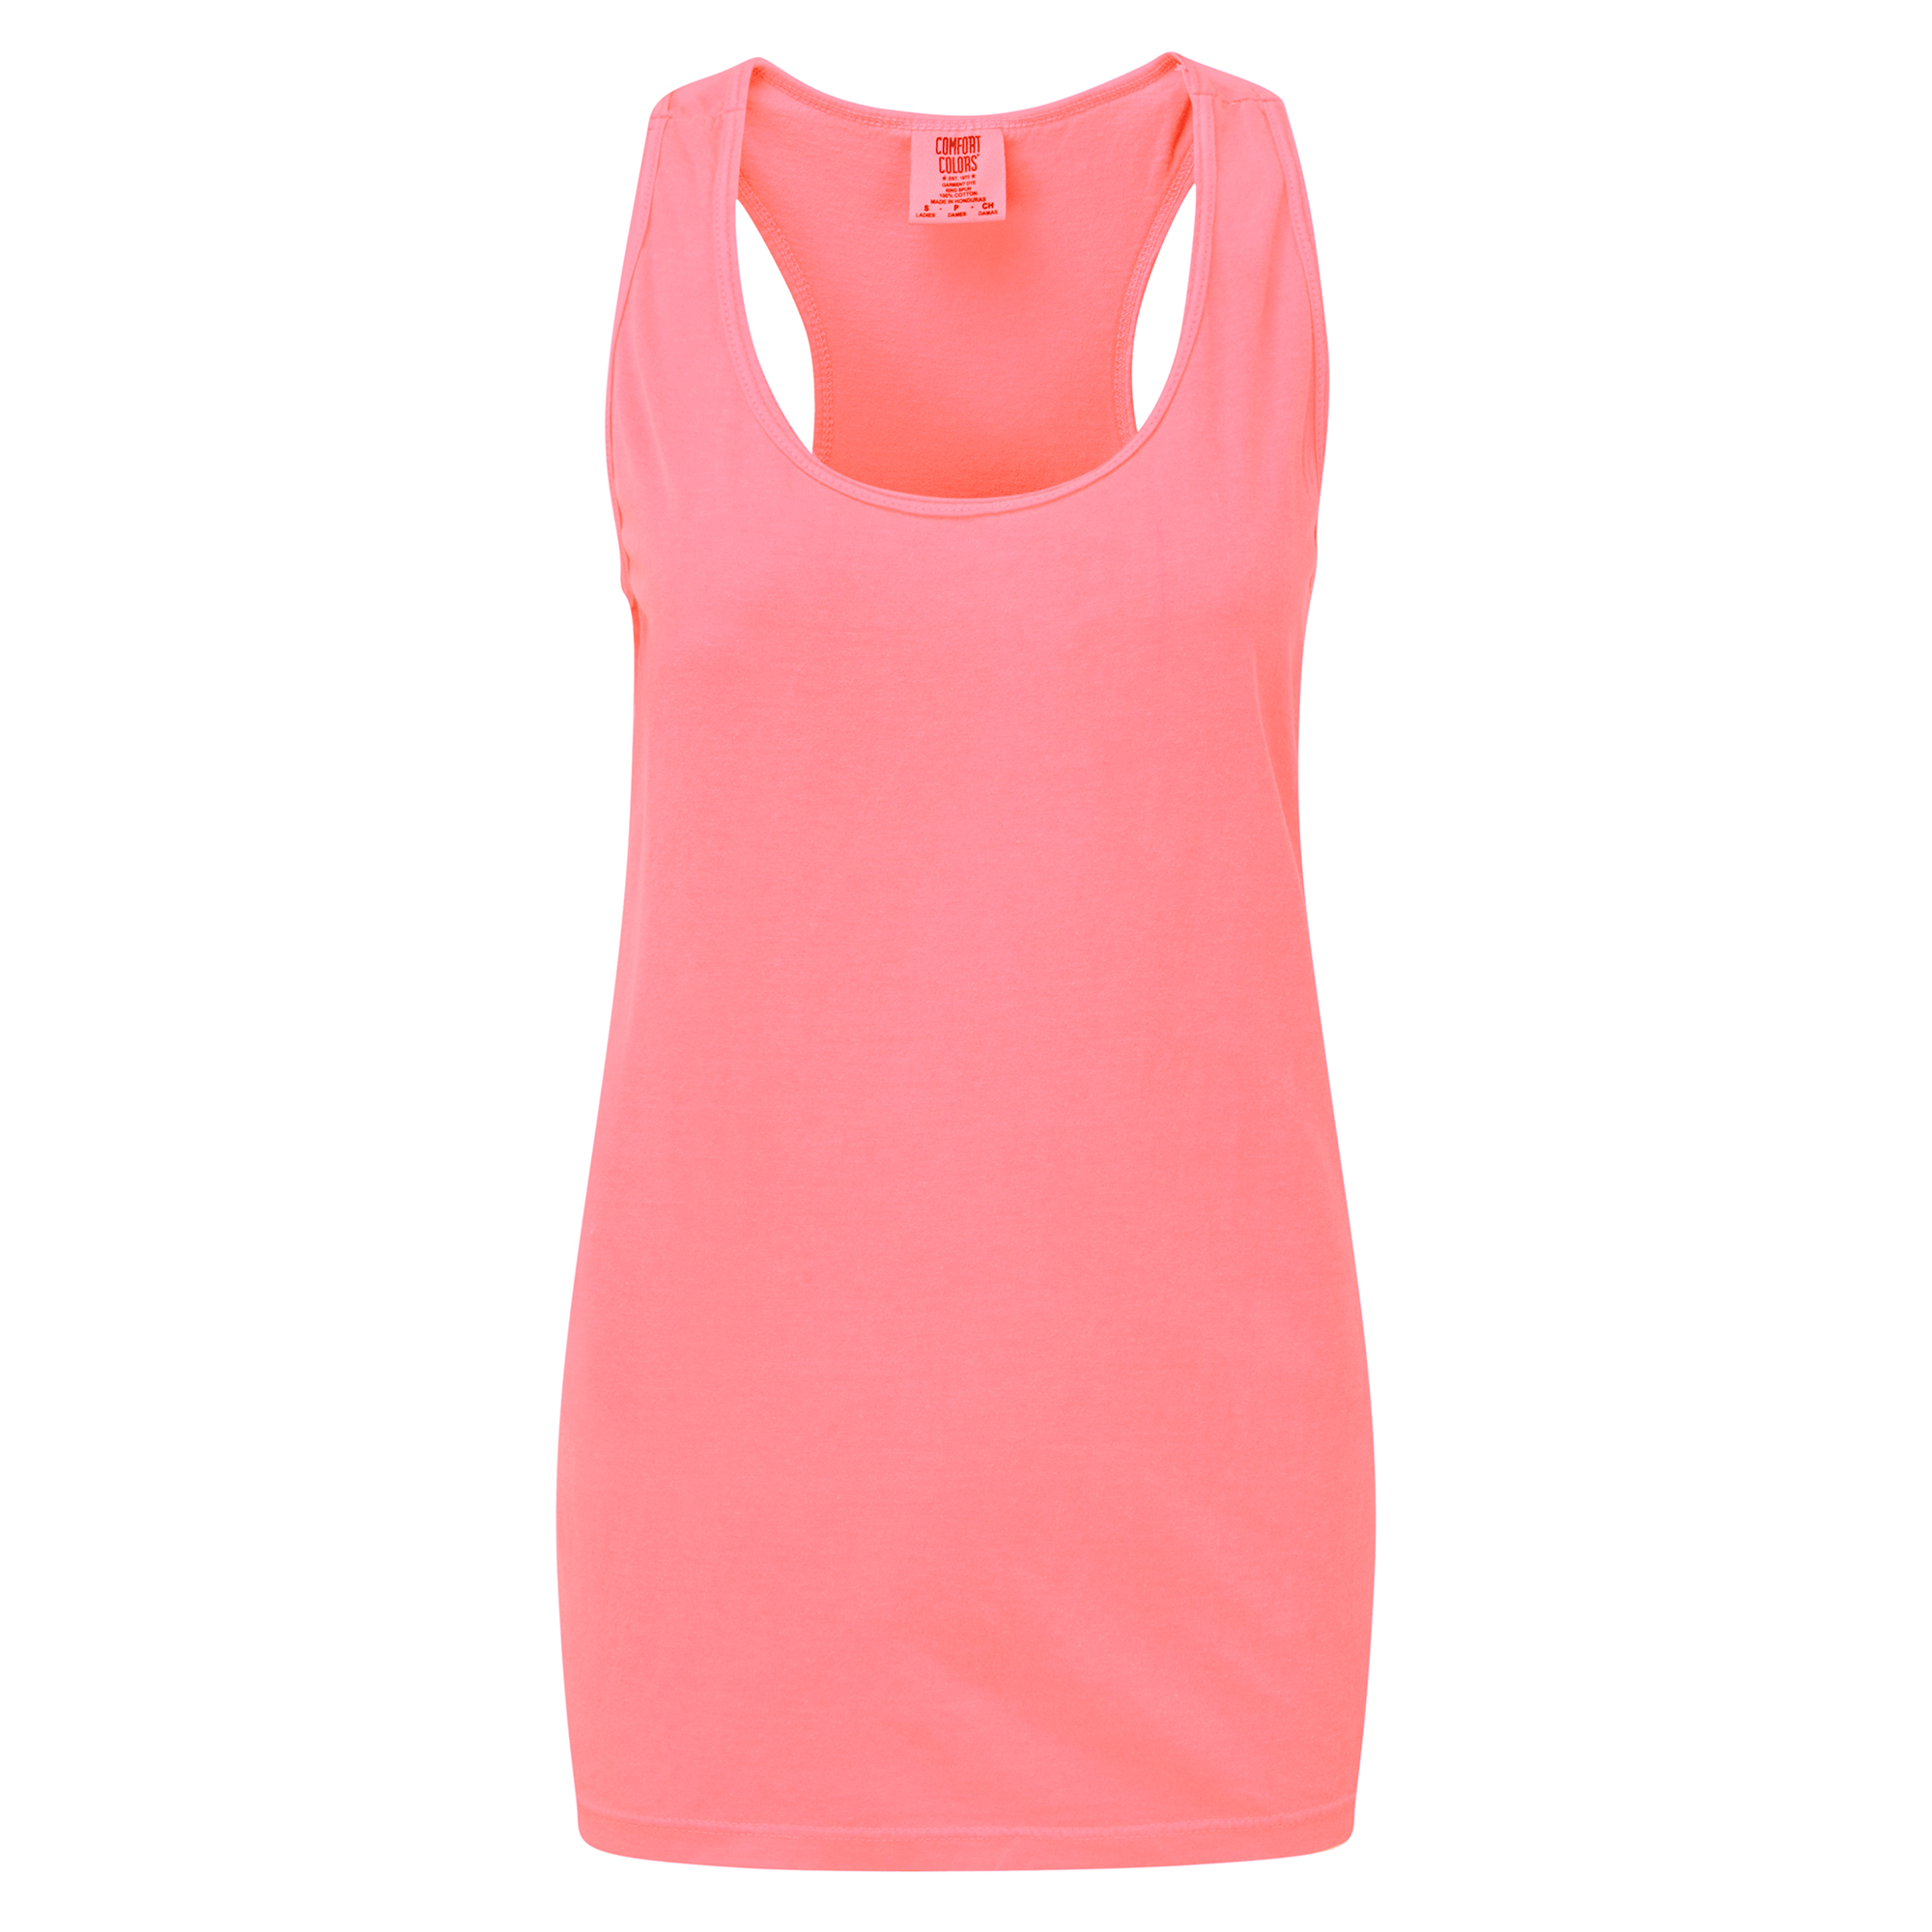 Camiseta Con Espalda De Nadador Comfort Colors - rosa - 